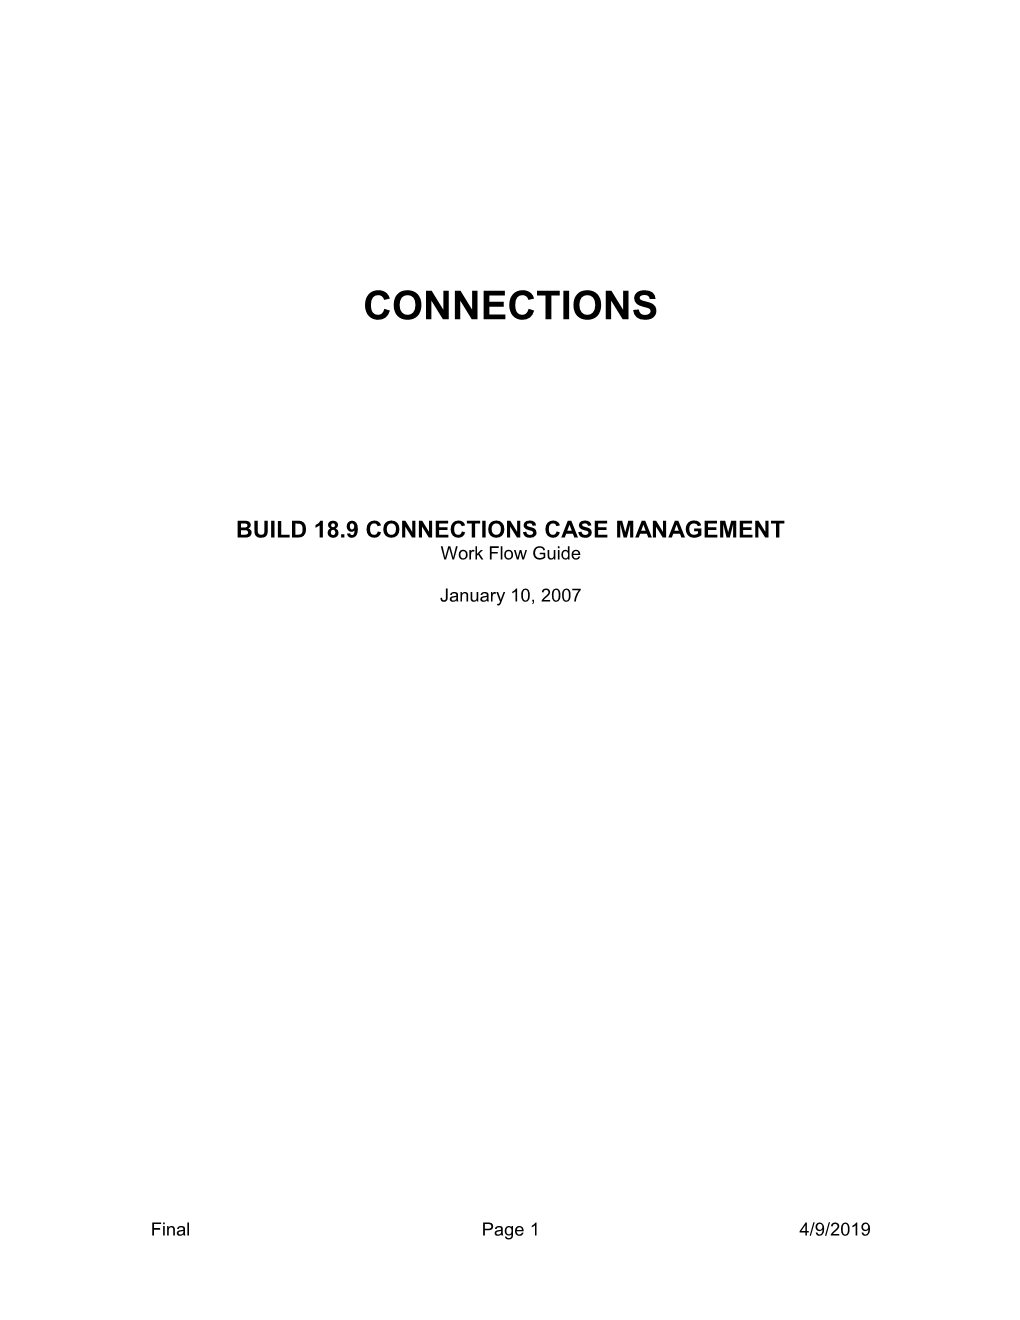 Build 18.9 Connections Case Management